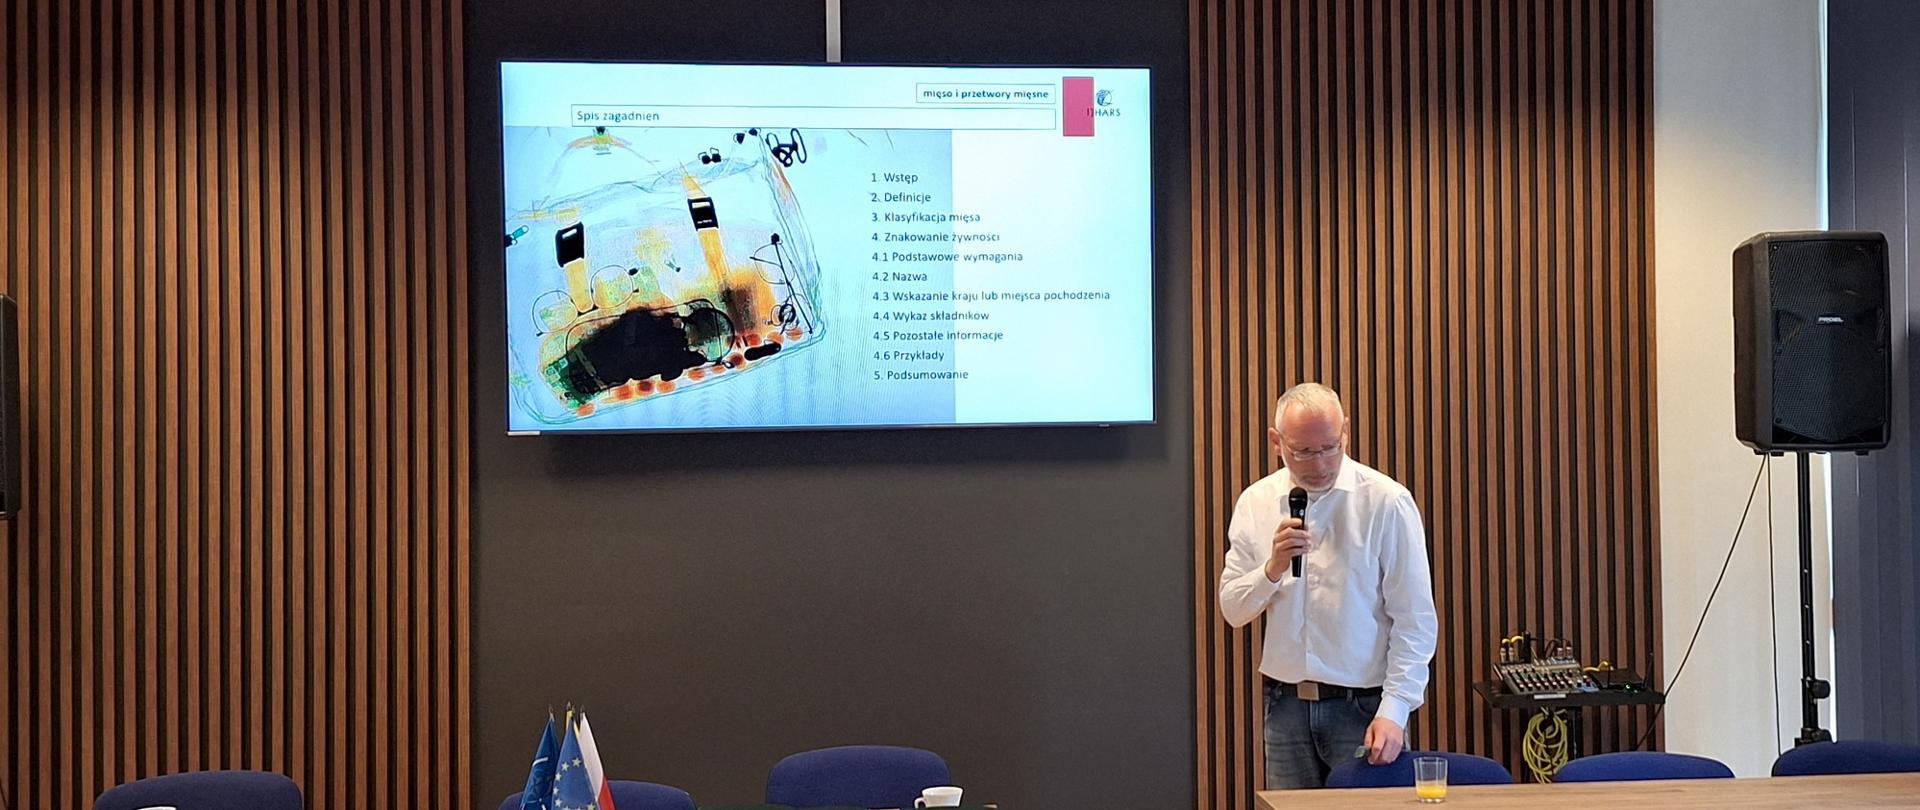 Jarosław Tymiński w trakcie wykładu. W prawym ręku trzyma mikrofon. Nad nim duży ekran monitora wyświetlającego slajd z treścią wykładu oraz zdjęciem poglądowym - zdjęciem prześwietlonej RTG torby.